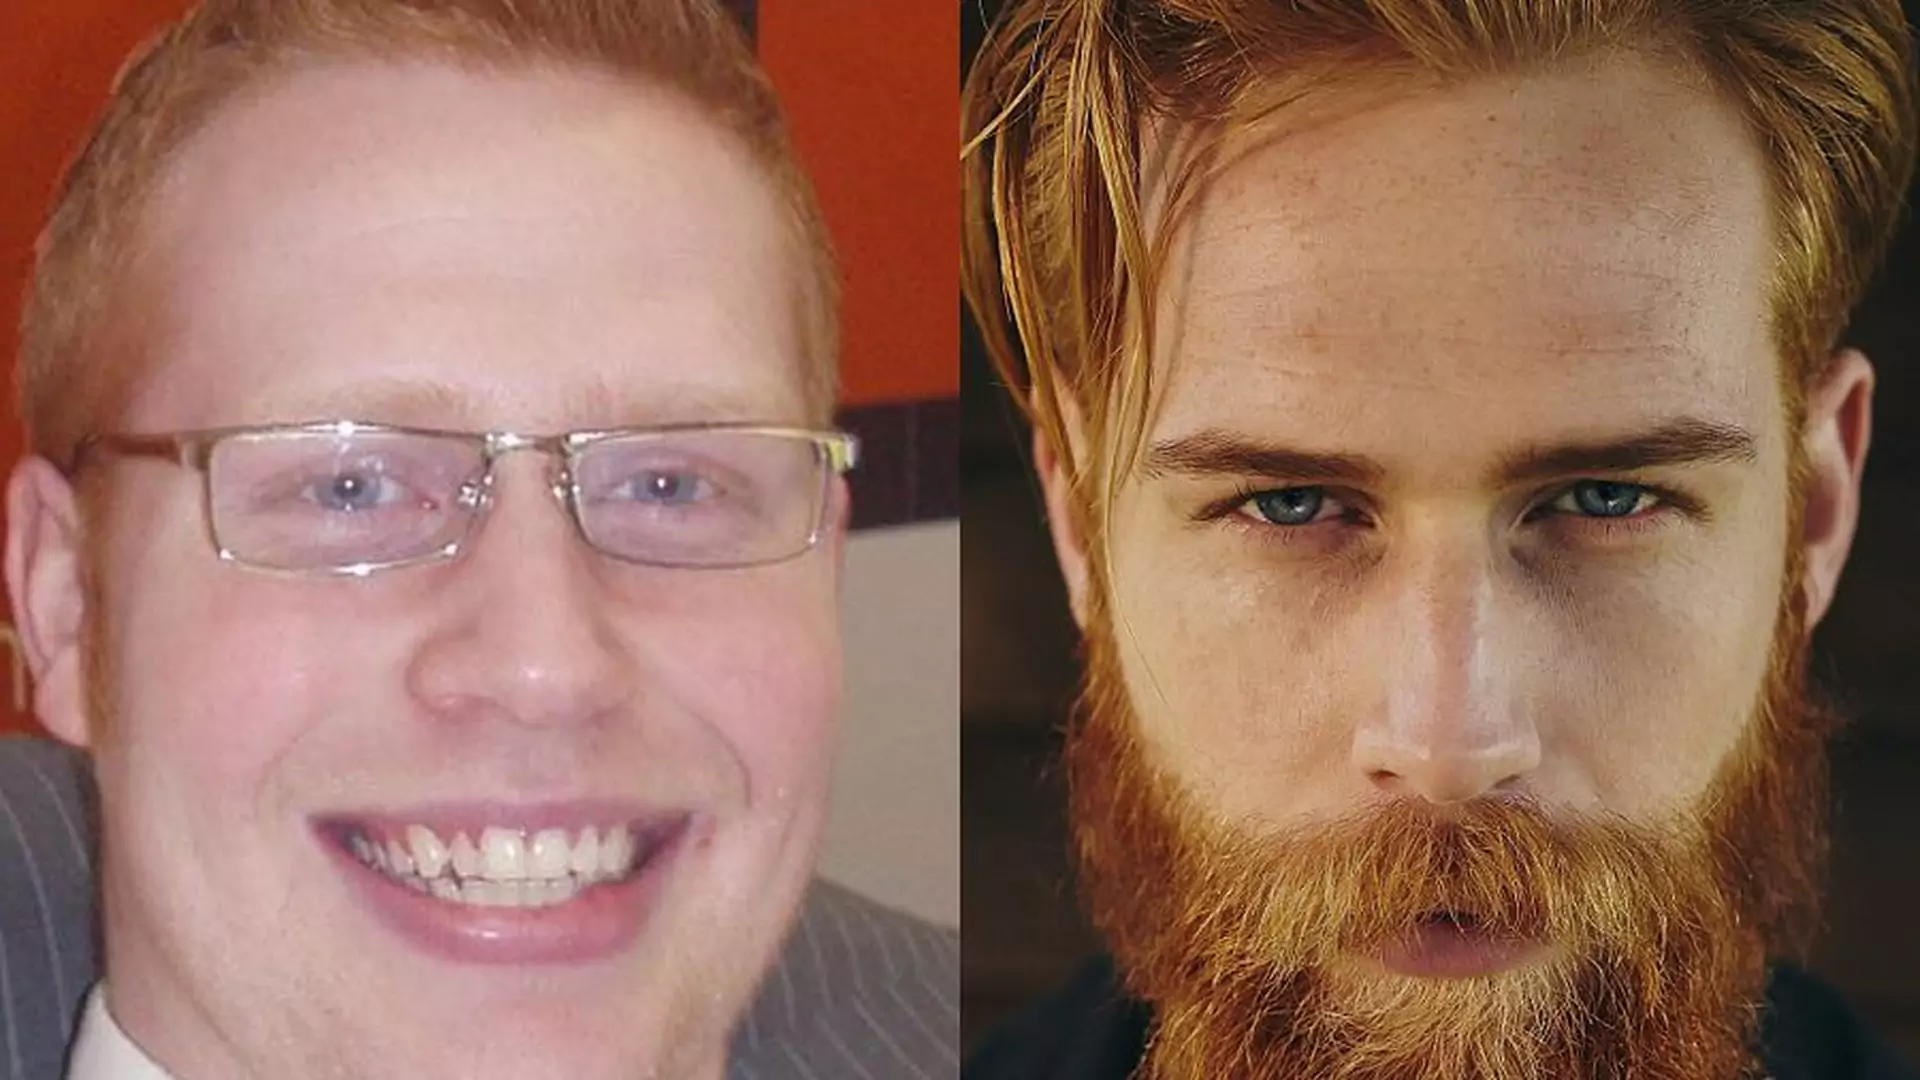 Fryzjer doradził mu zapuszczenie brody i... to zmieniło jego życie